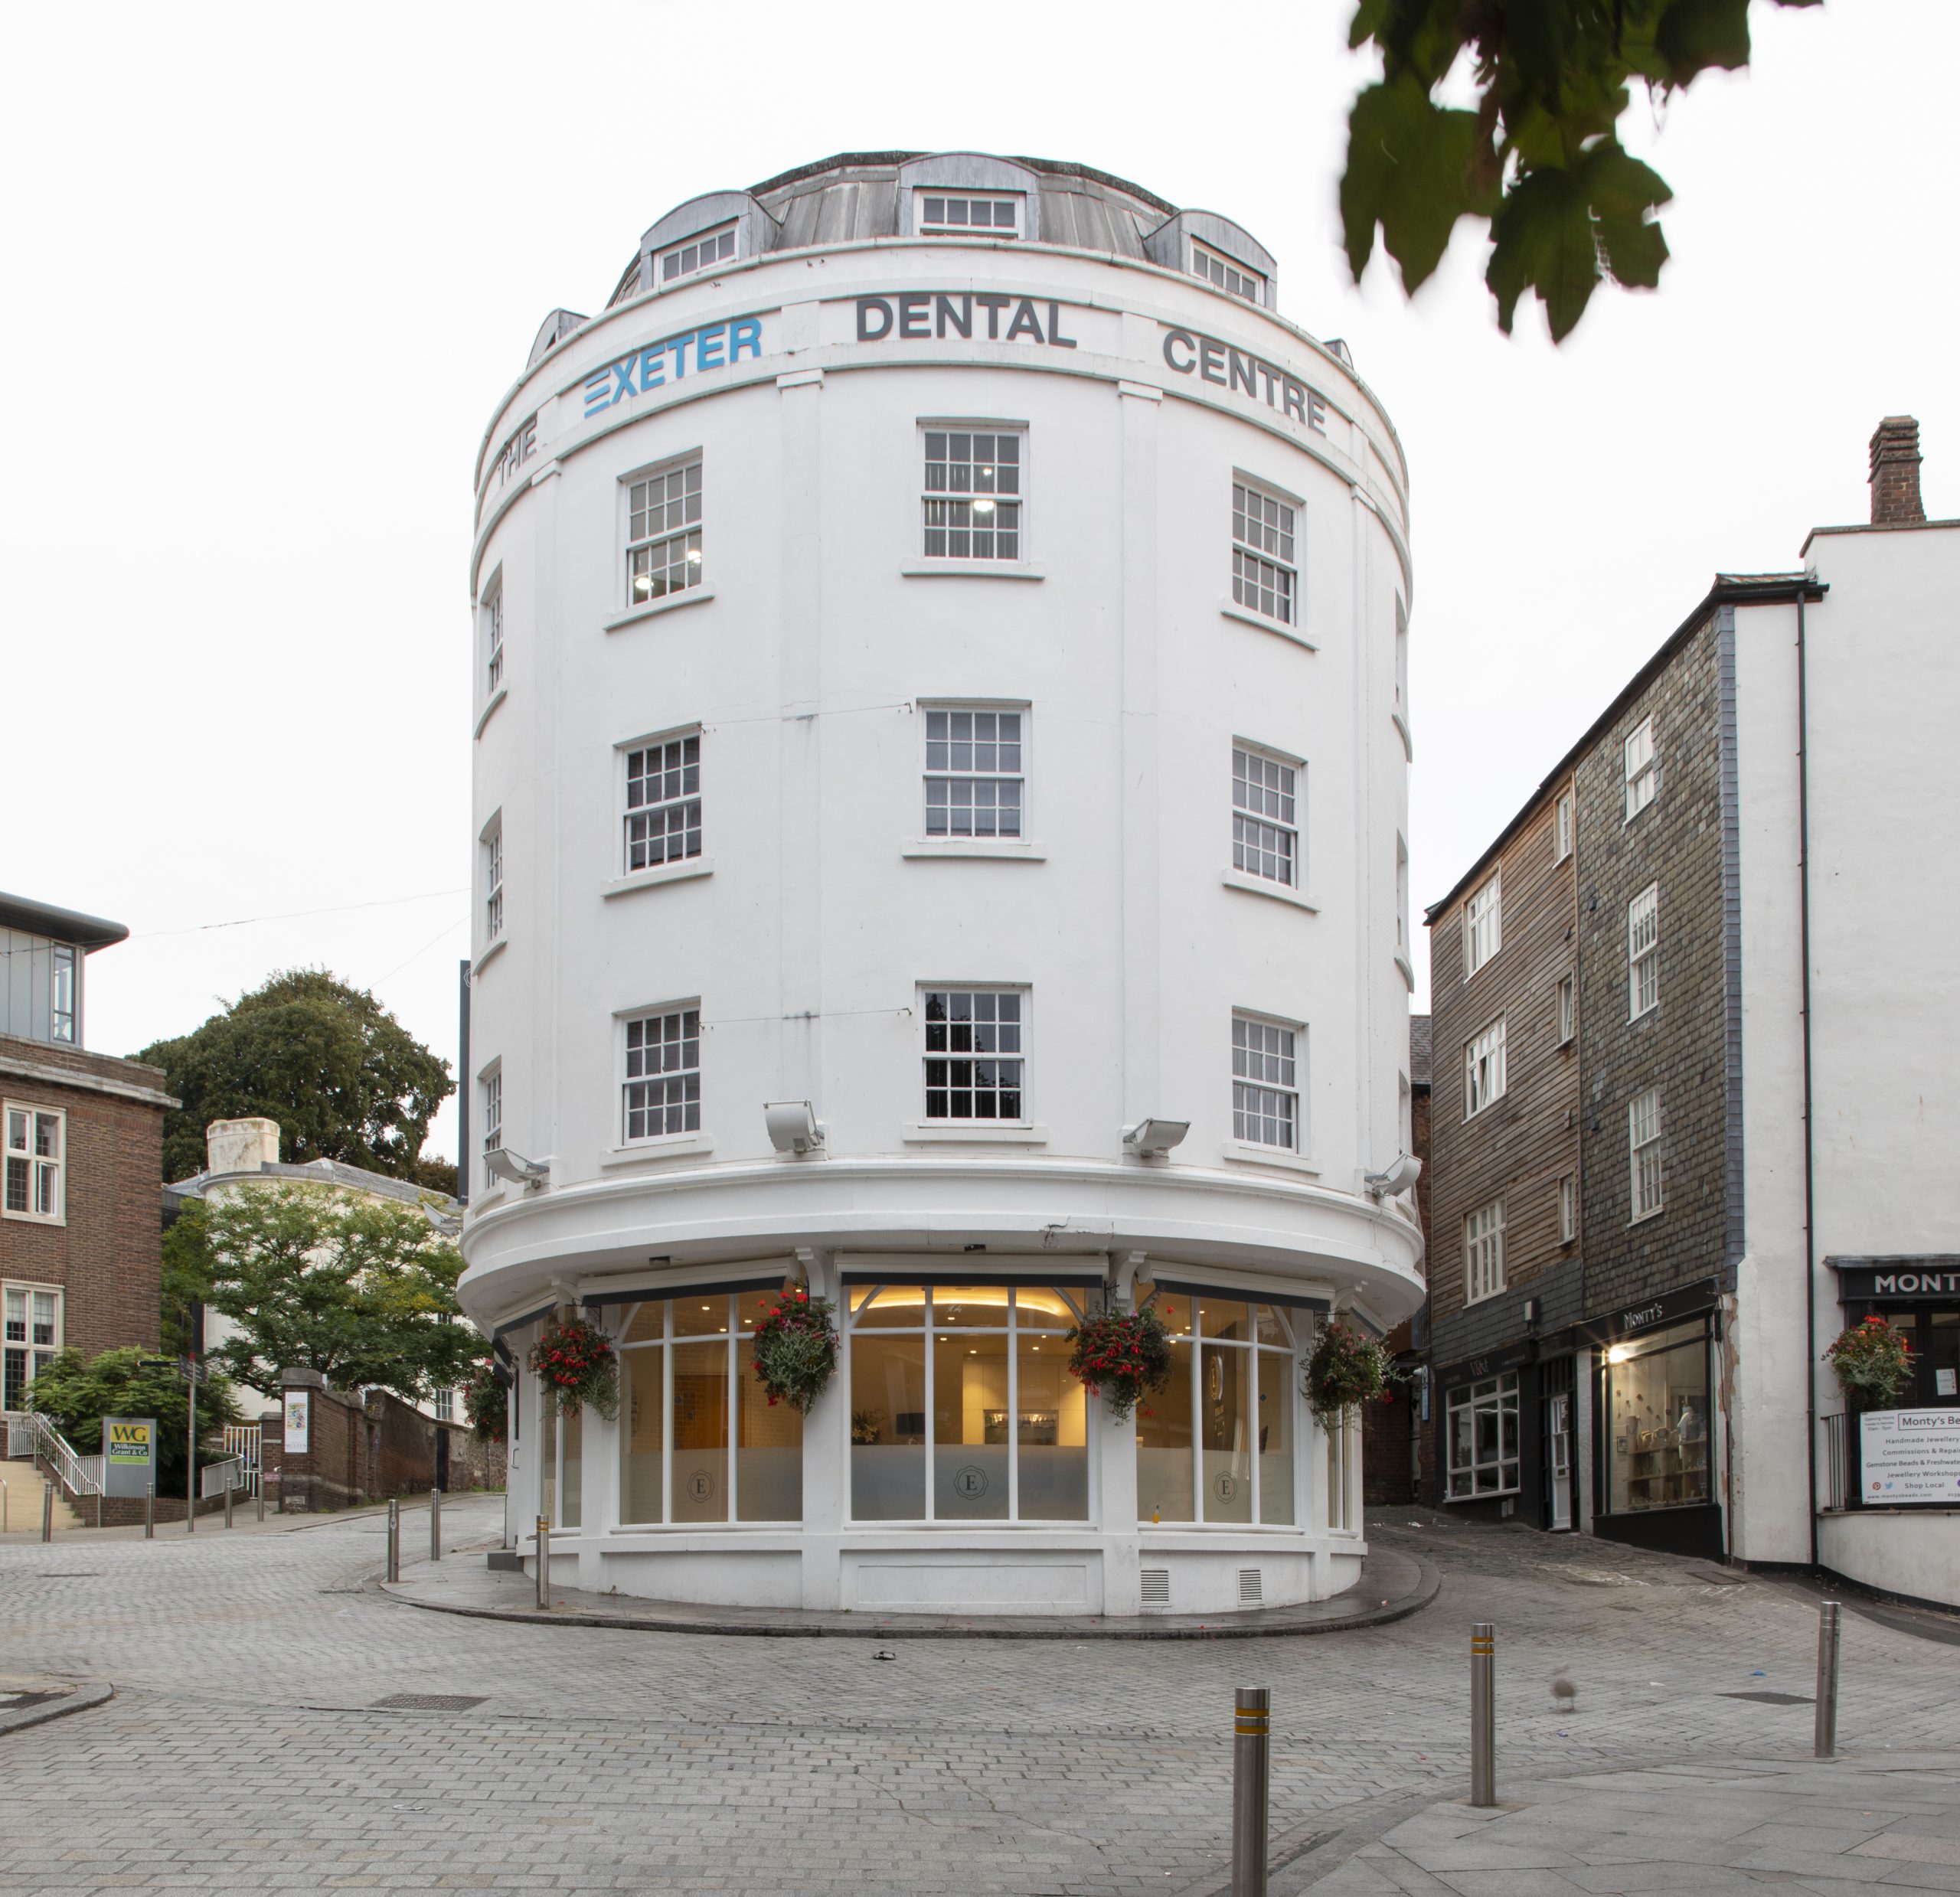 Exeter_Dental_Centre